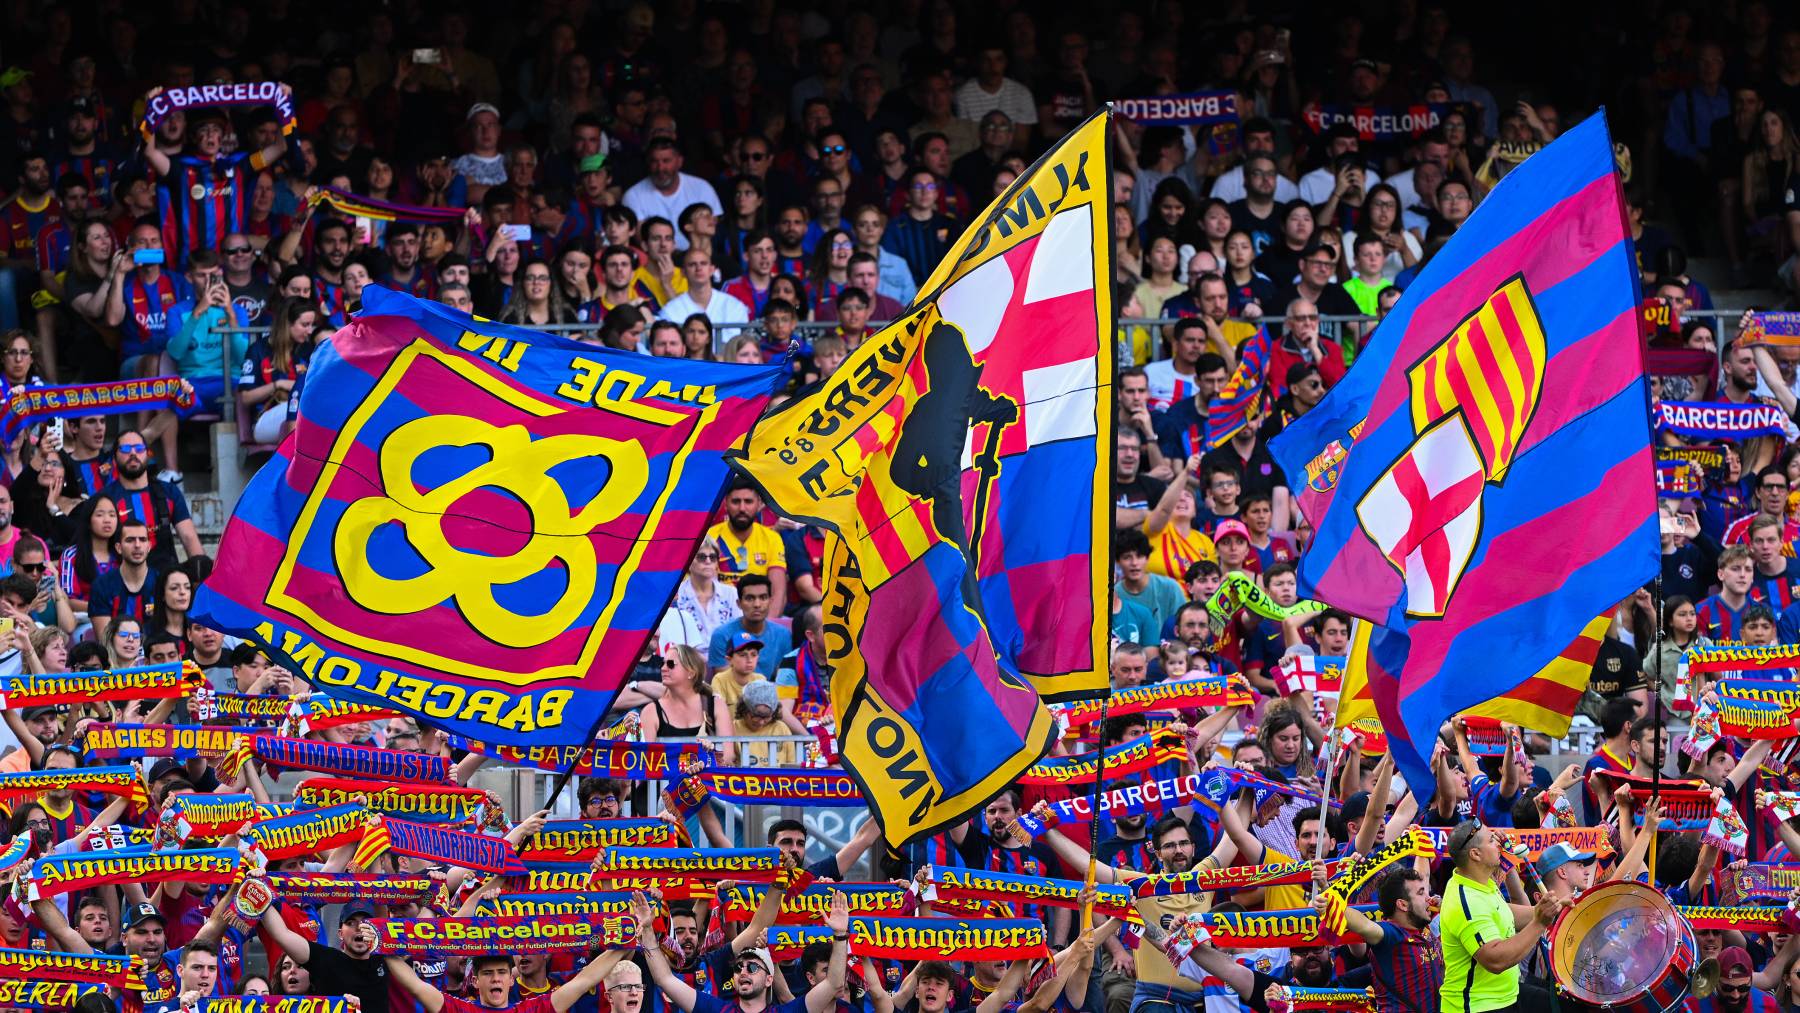 El motivo por el que se llaman culés los aficionados del Barcelona. (Foto: Getty)